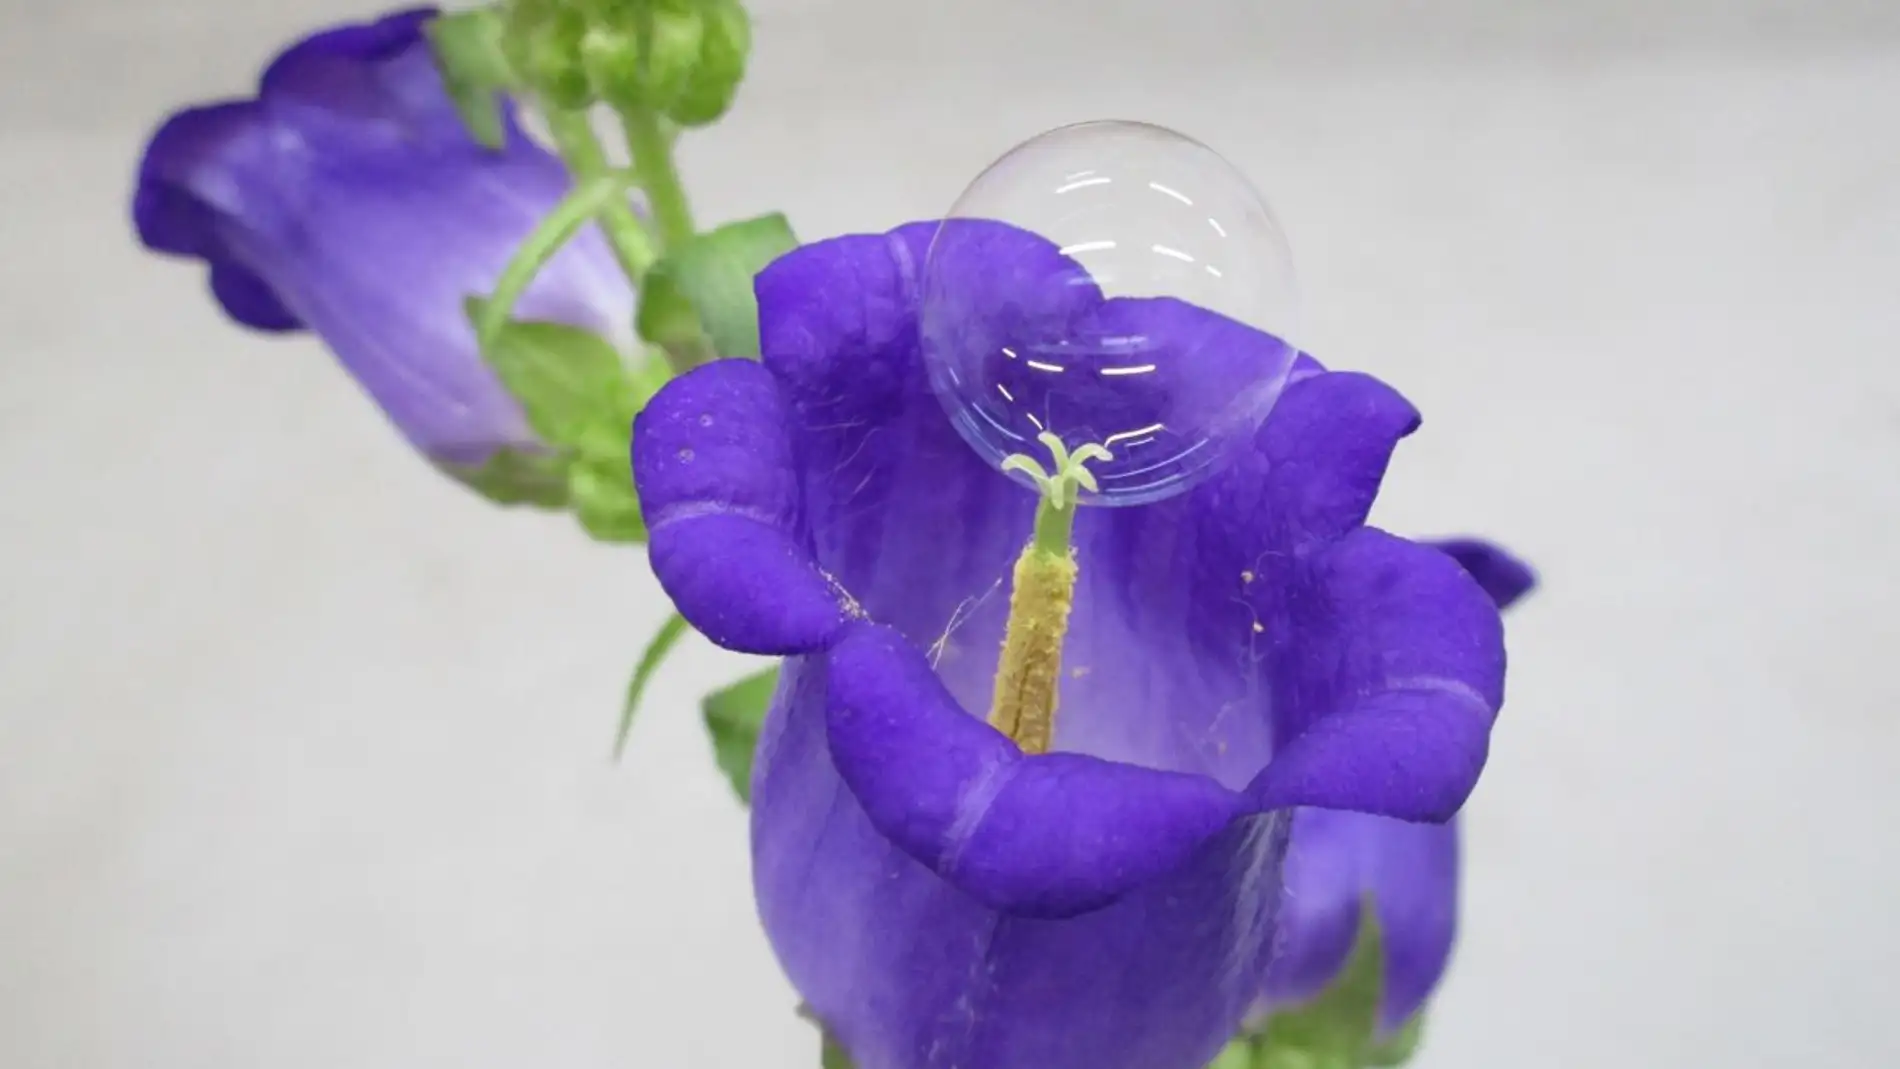 Burbuja sobre una flor